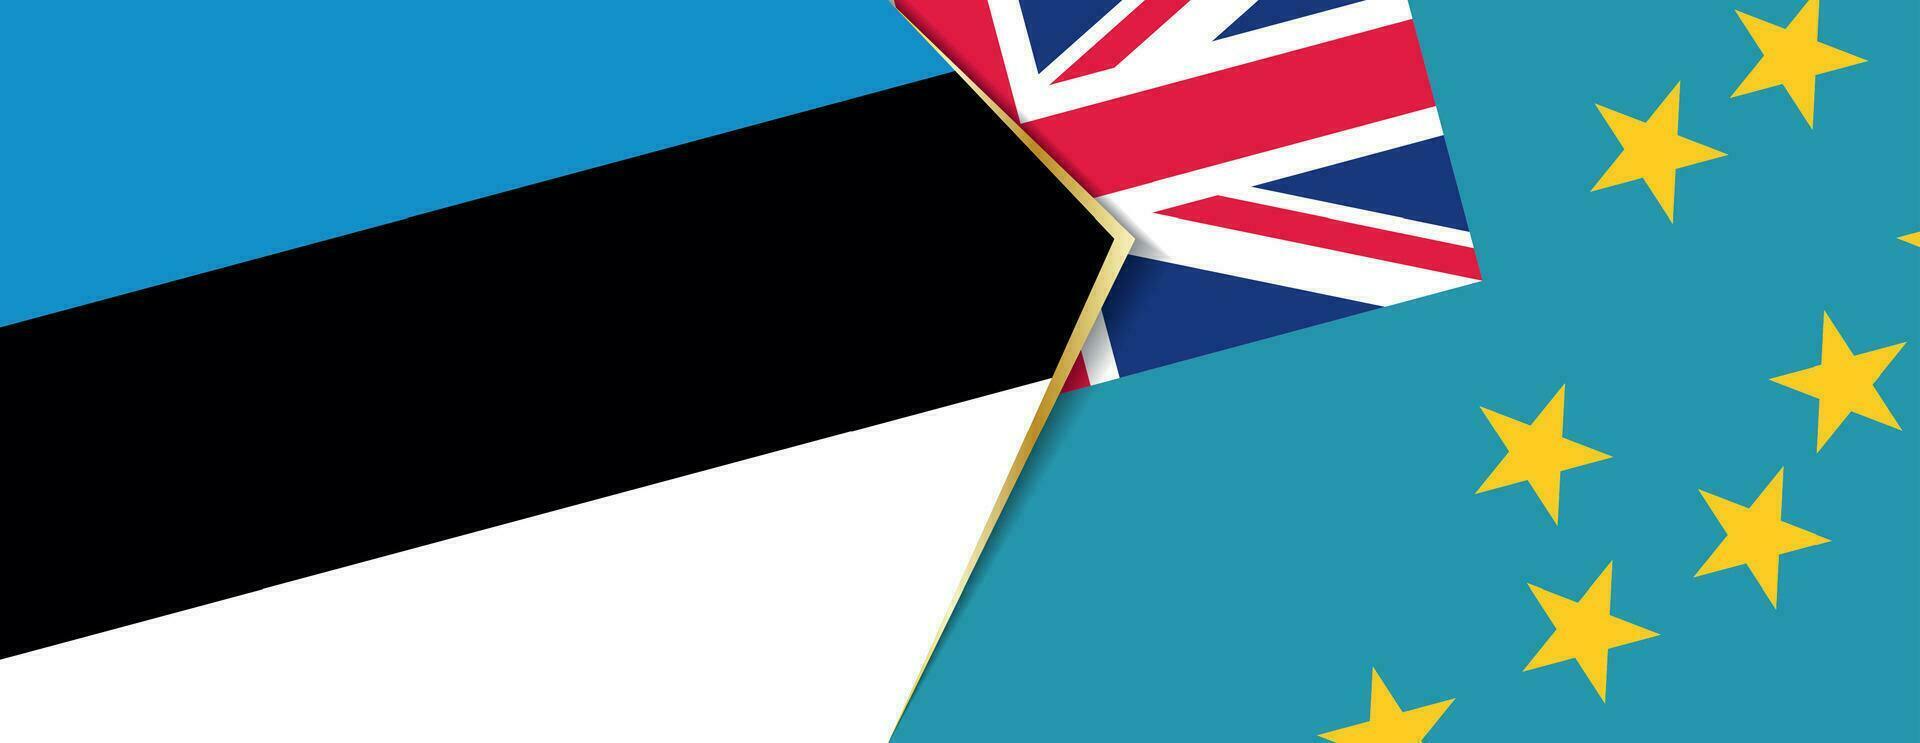 Estonia y tuvalu banderas, dos vector banderas